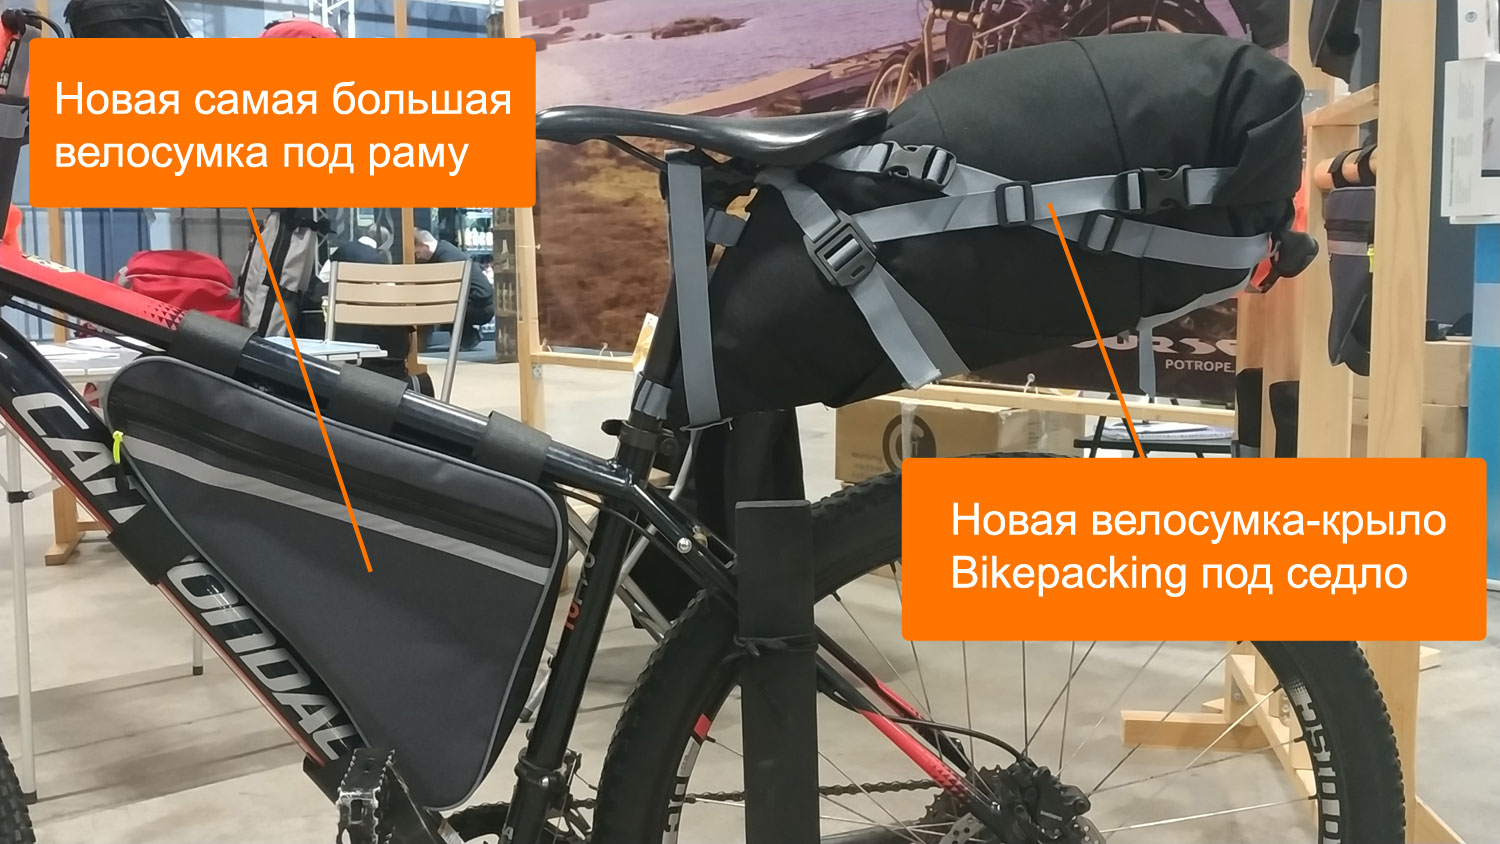 Новая сумка Course Bikepacking под седло и большая велосумка под раму на выставке «ВелоПарк-2022»